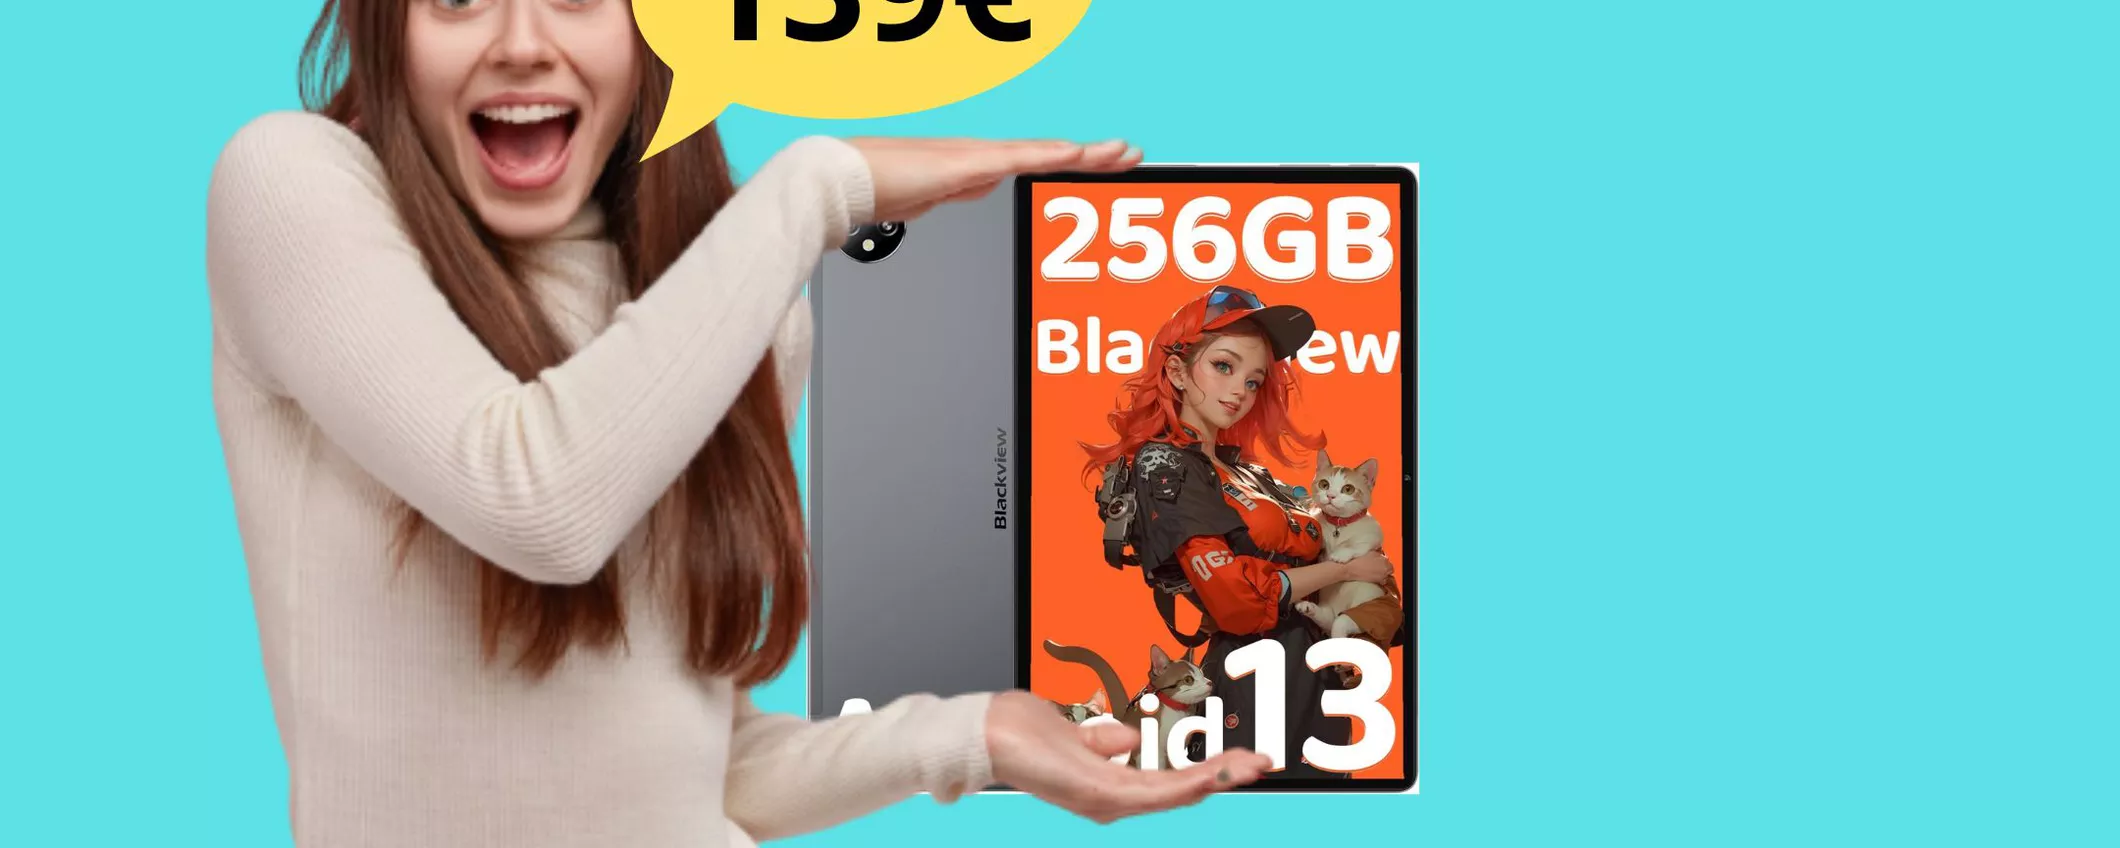 Buon Anno da Amazon: Tablet Blackview 16 RAM + 256 GB di memoria a soli 139 euro!